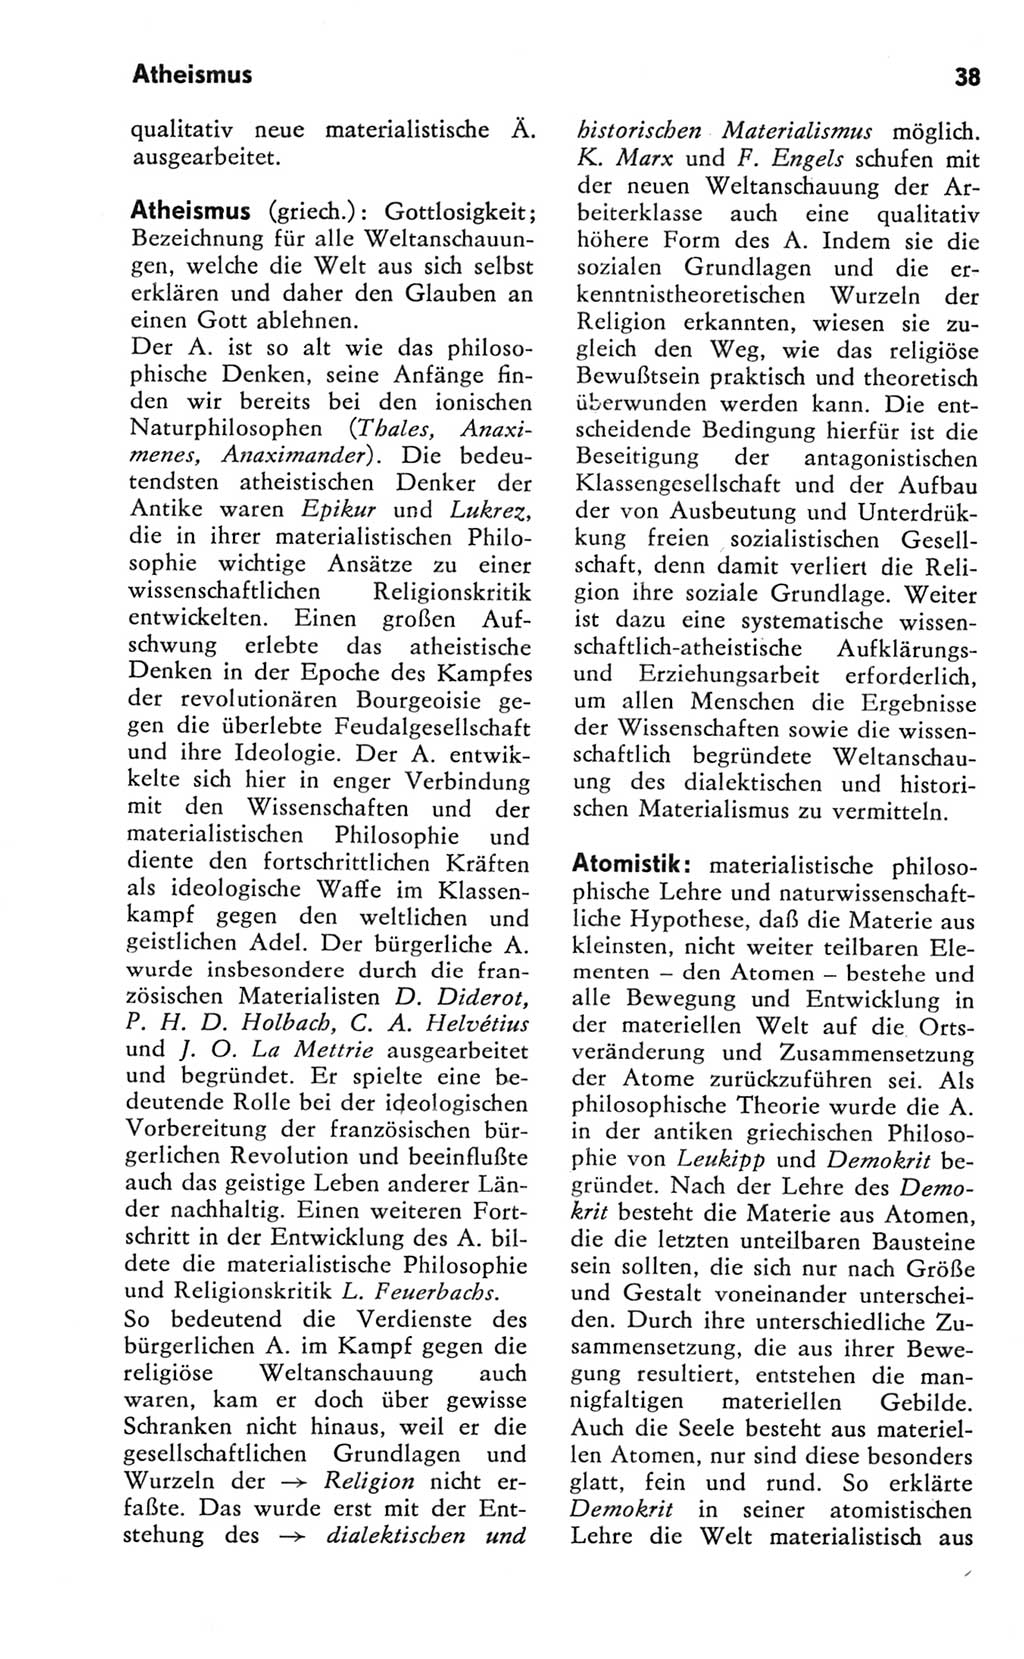 Kleines Wörterbuch der marxistisch-leninistischen Philosophie [Deutsche Demokratische Republik (DDR)] 1981, Seite 38 (Kl. Wb. ML Phil. DDR 1981, S. 38)